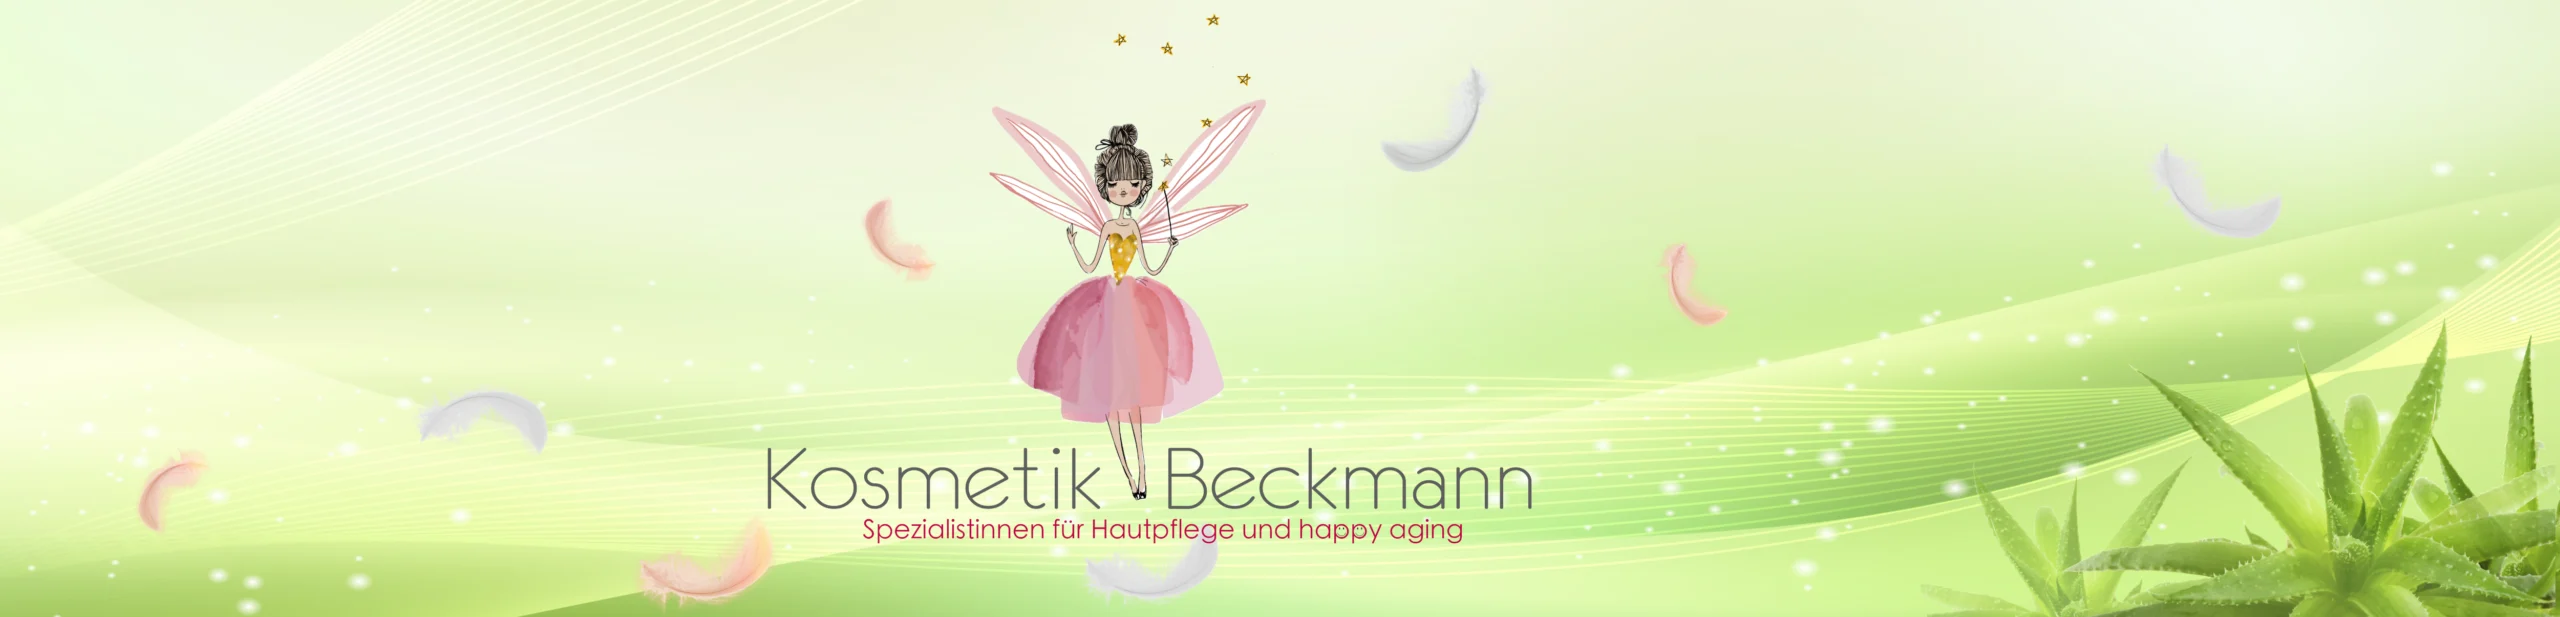 Cosmetics Beckmann